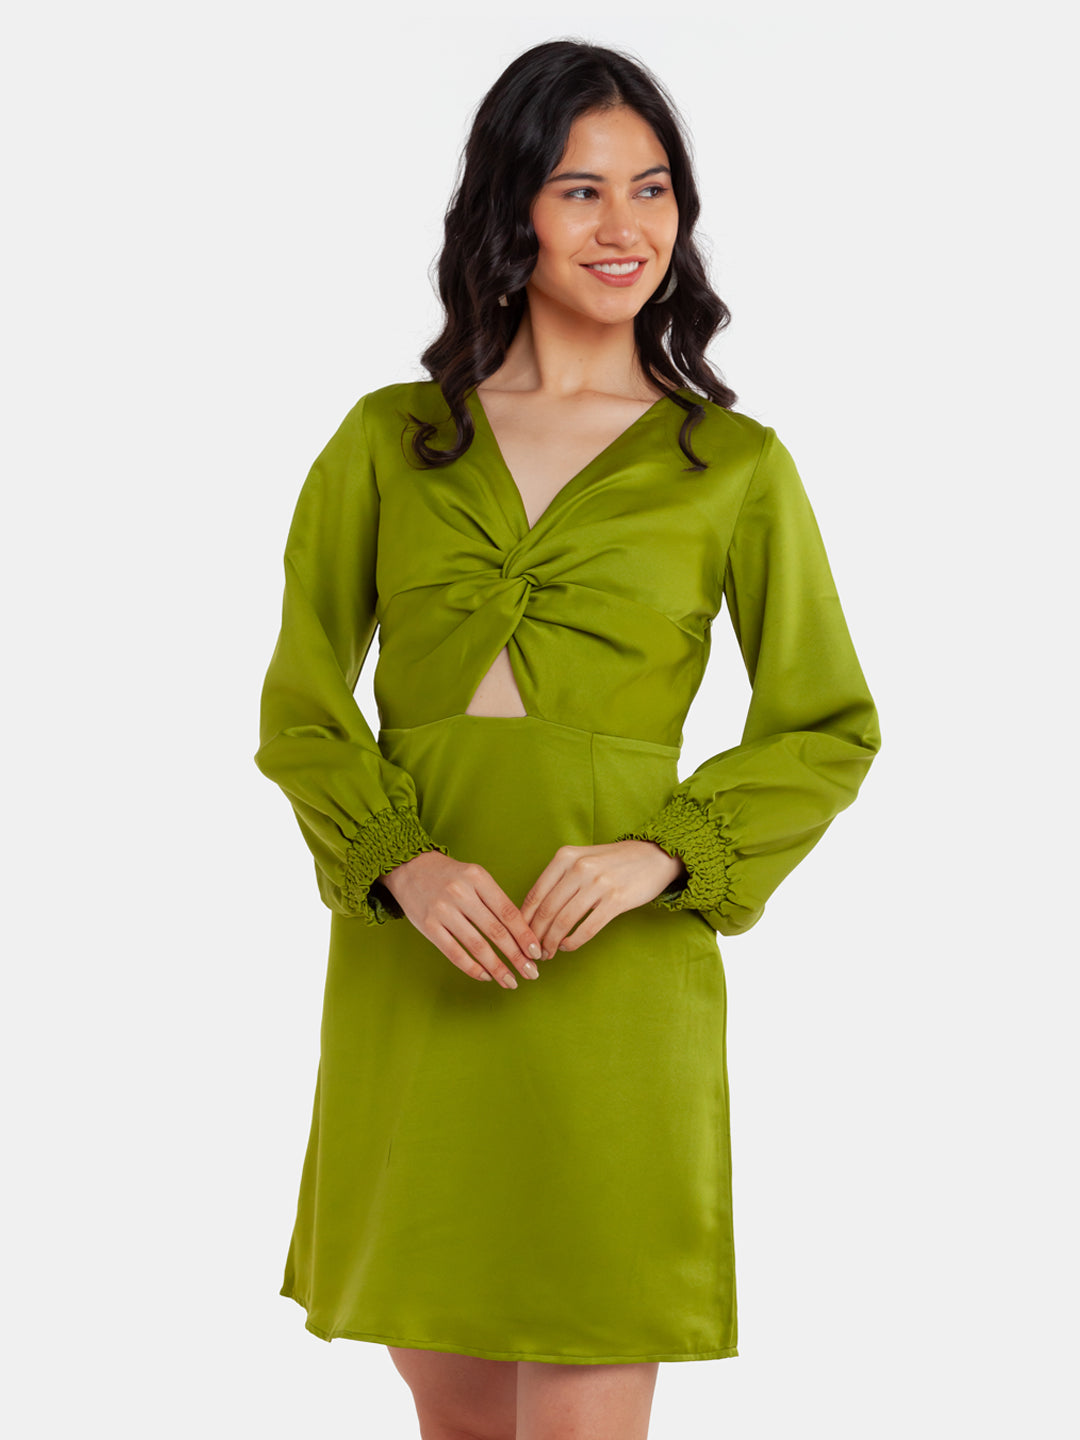 Green Solid Cutout Short Dress For Women